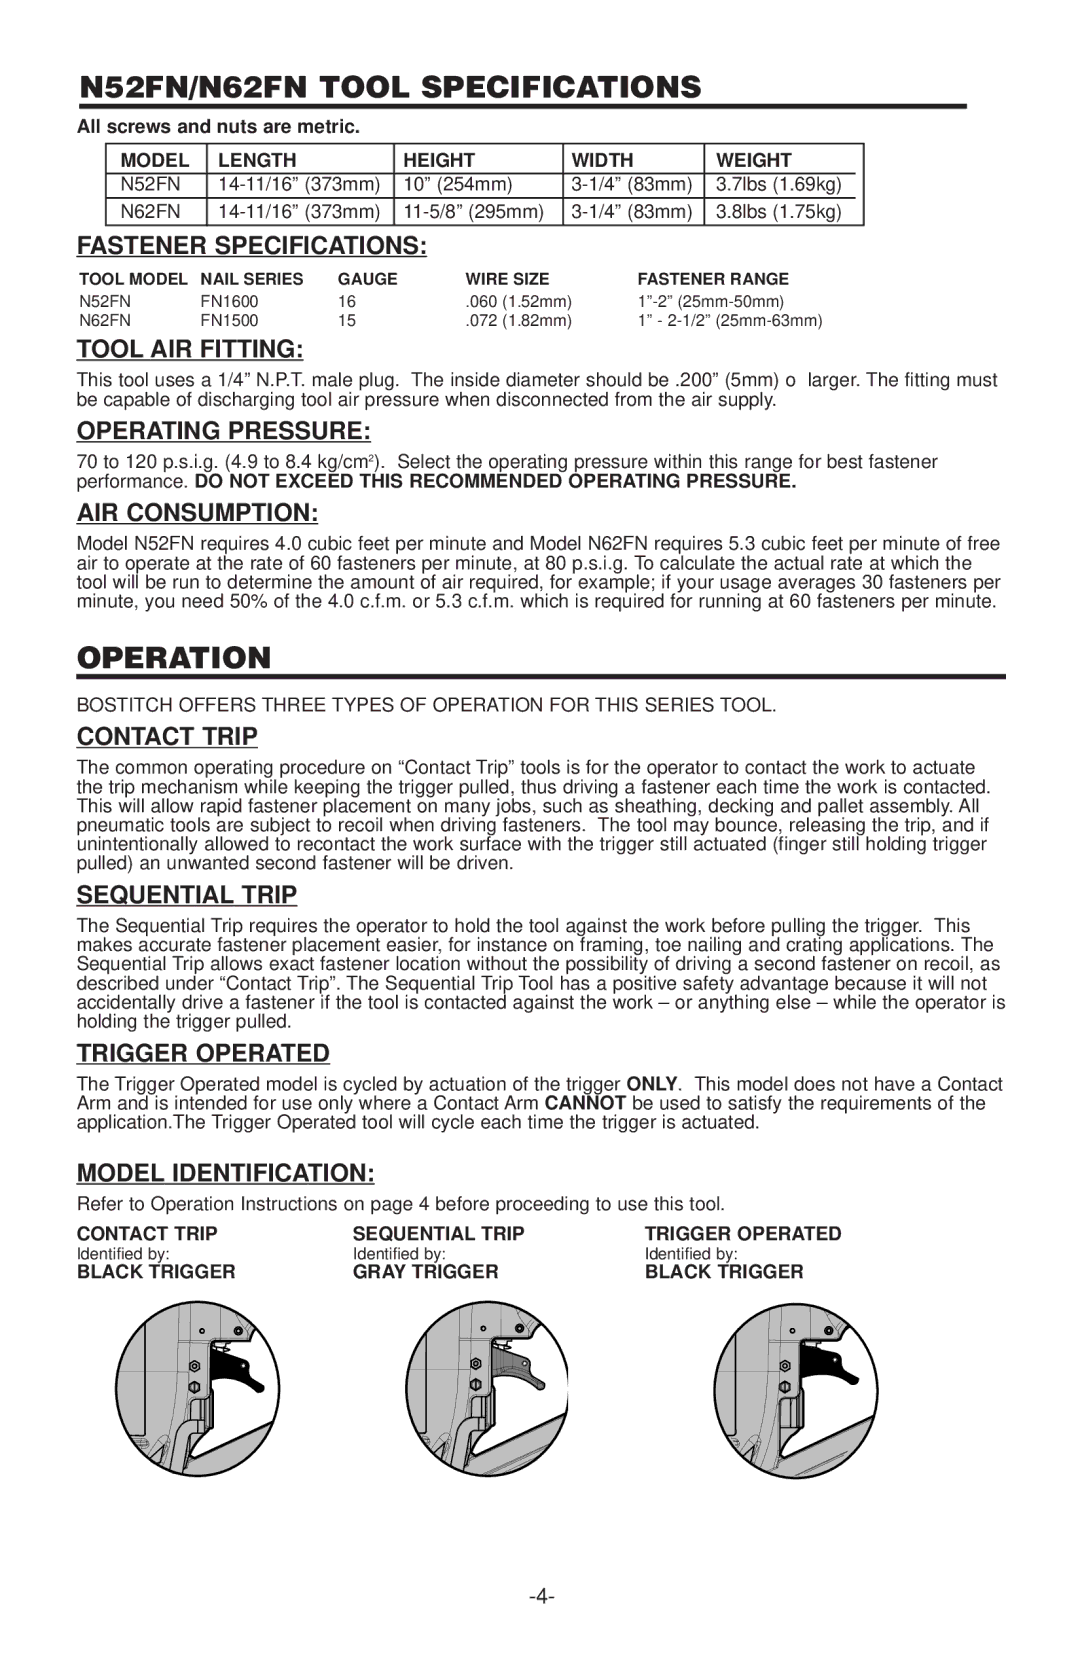 Quantaray manual N52FN/N62FN Tool Specifications 